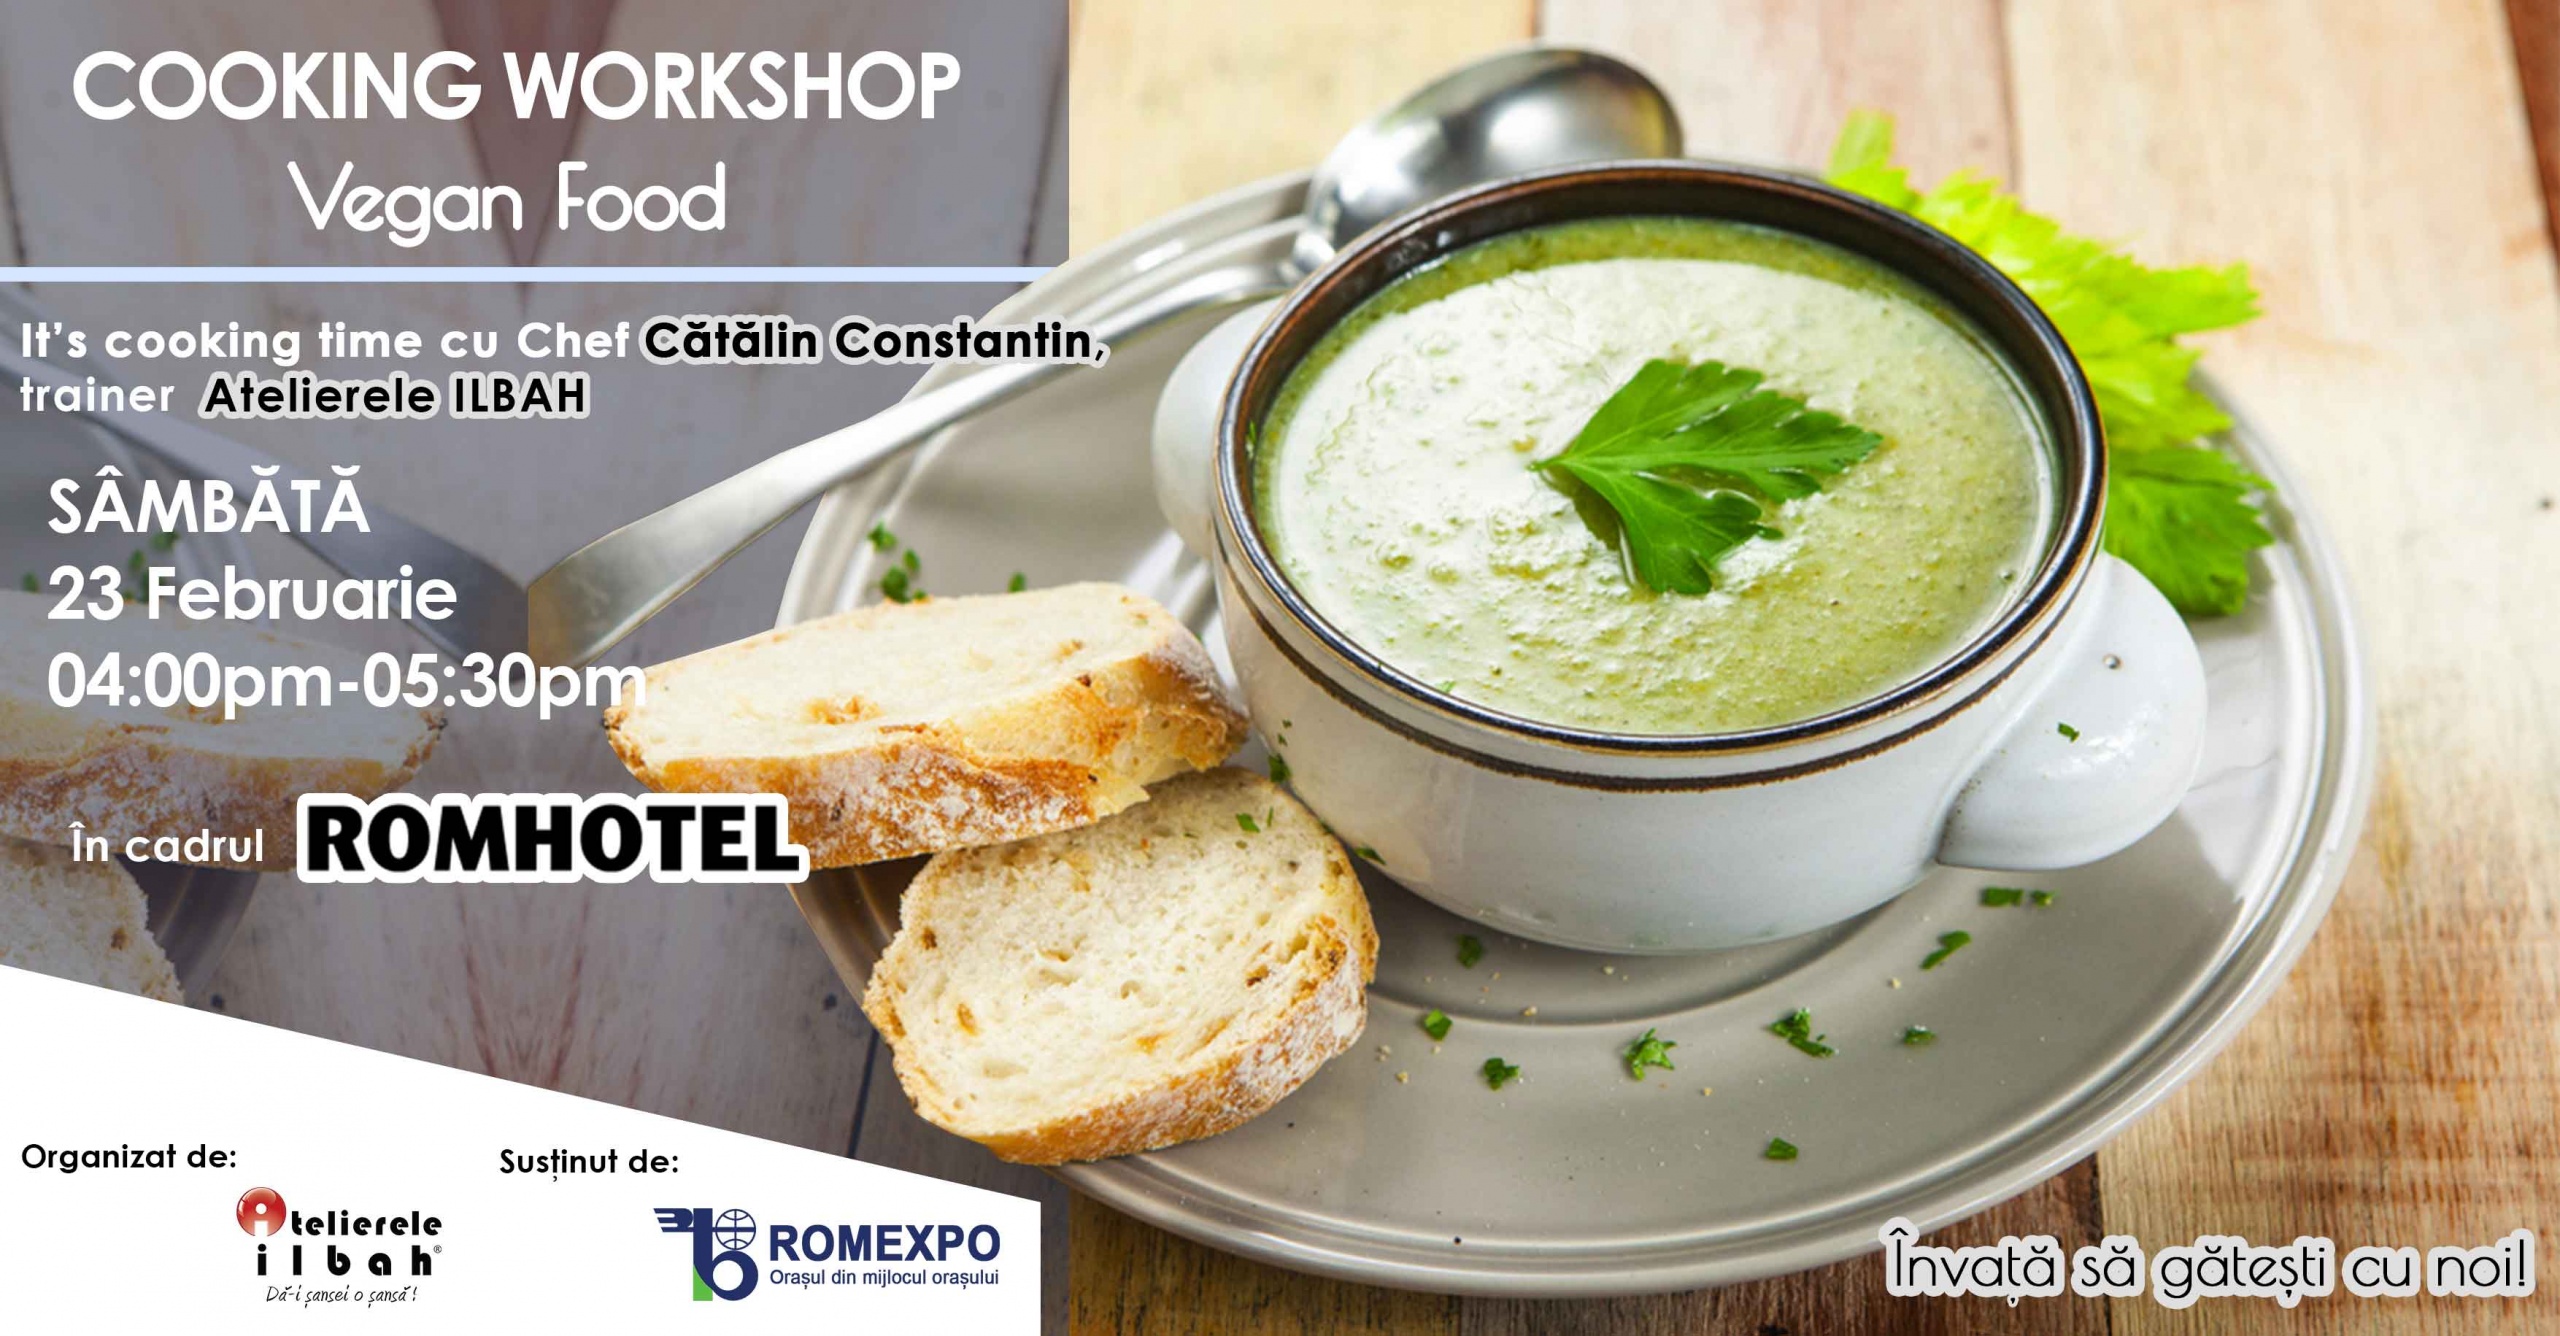 nu-rata-workshopurile-de-cooking-organizate-de-atelierele-ilbah-in-cadrul-romhotel-2019-7